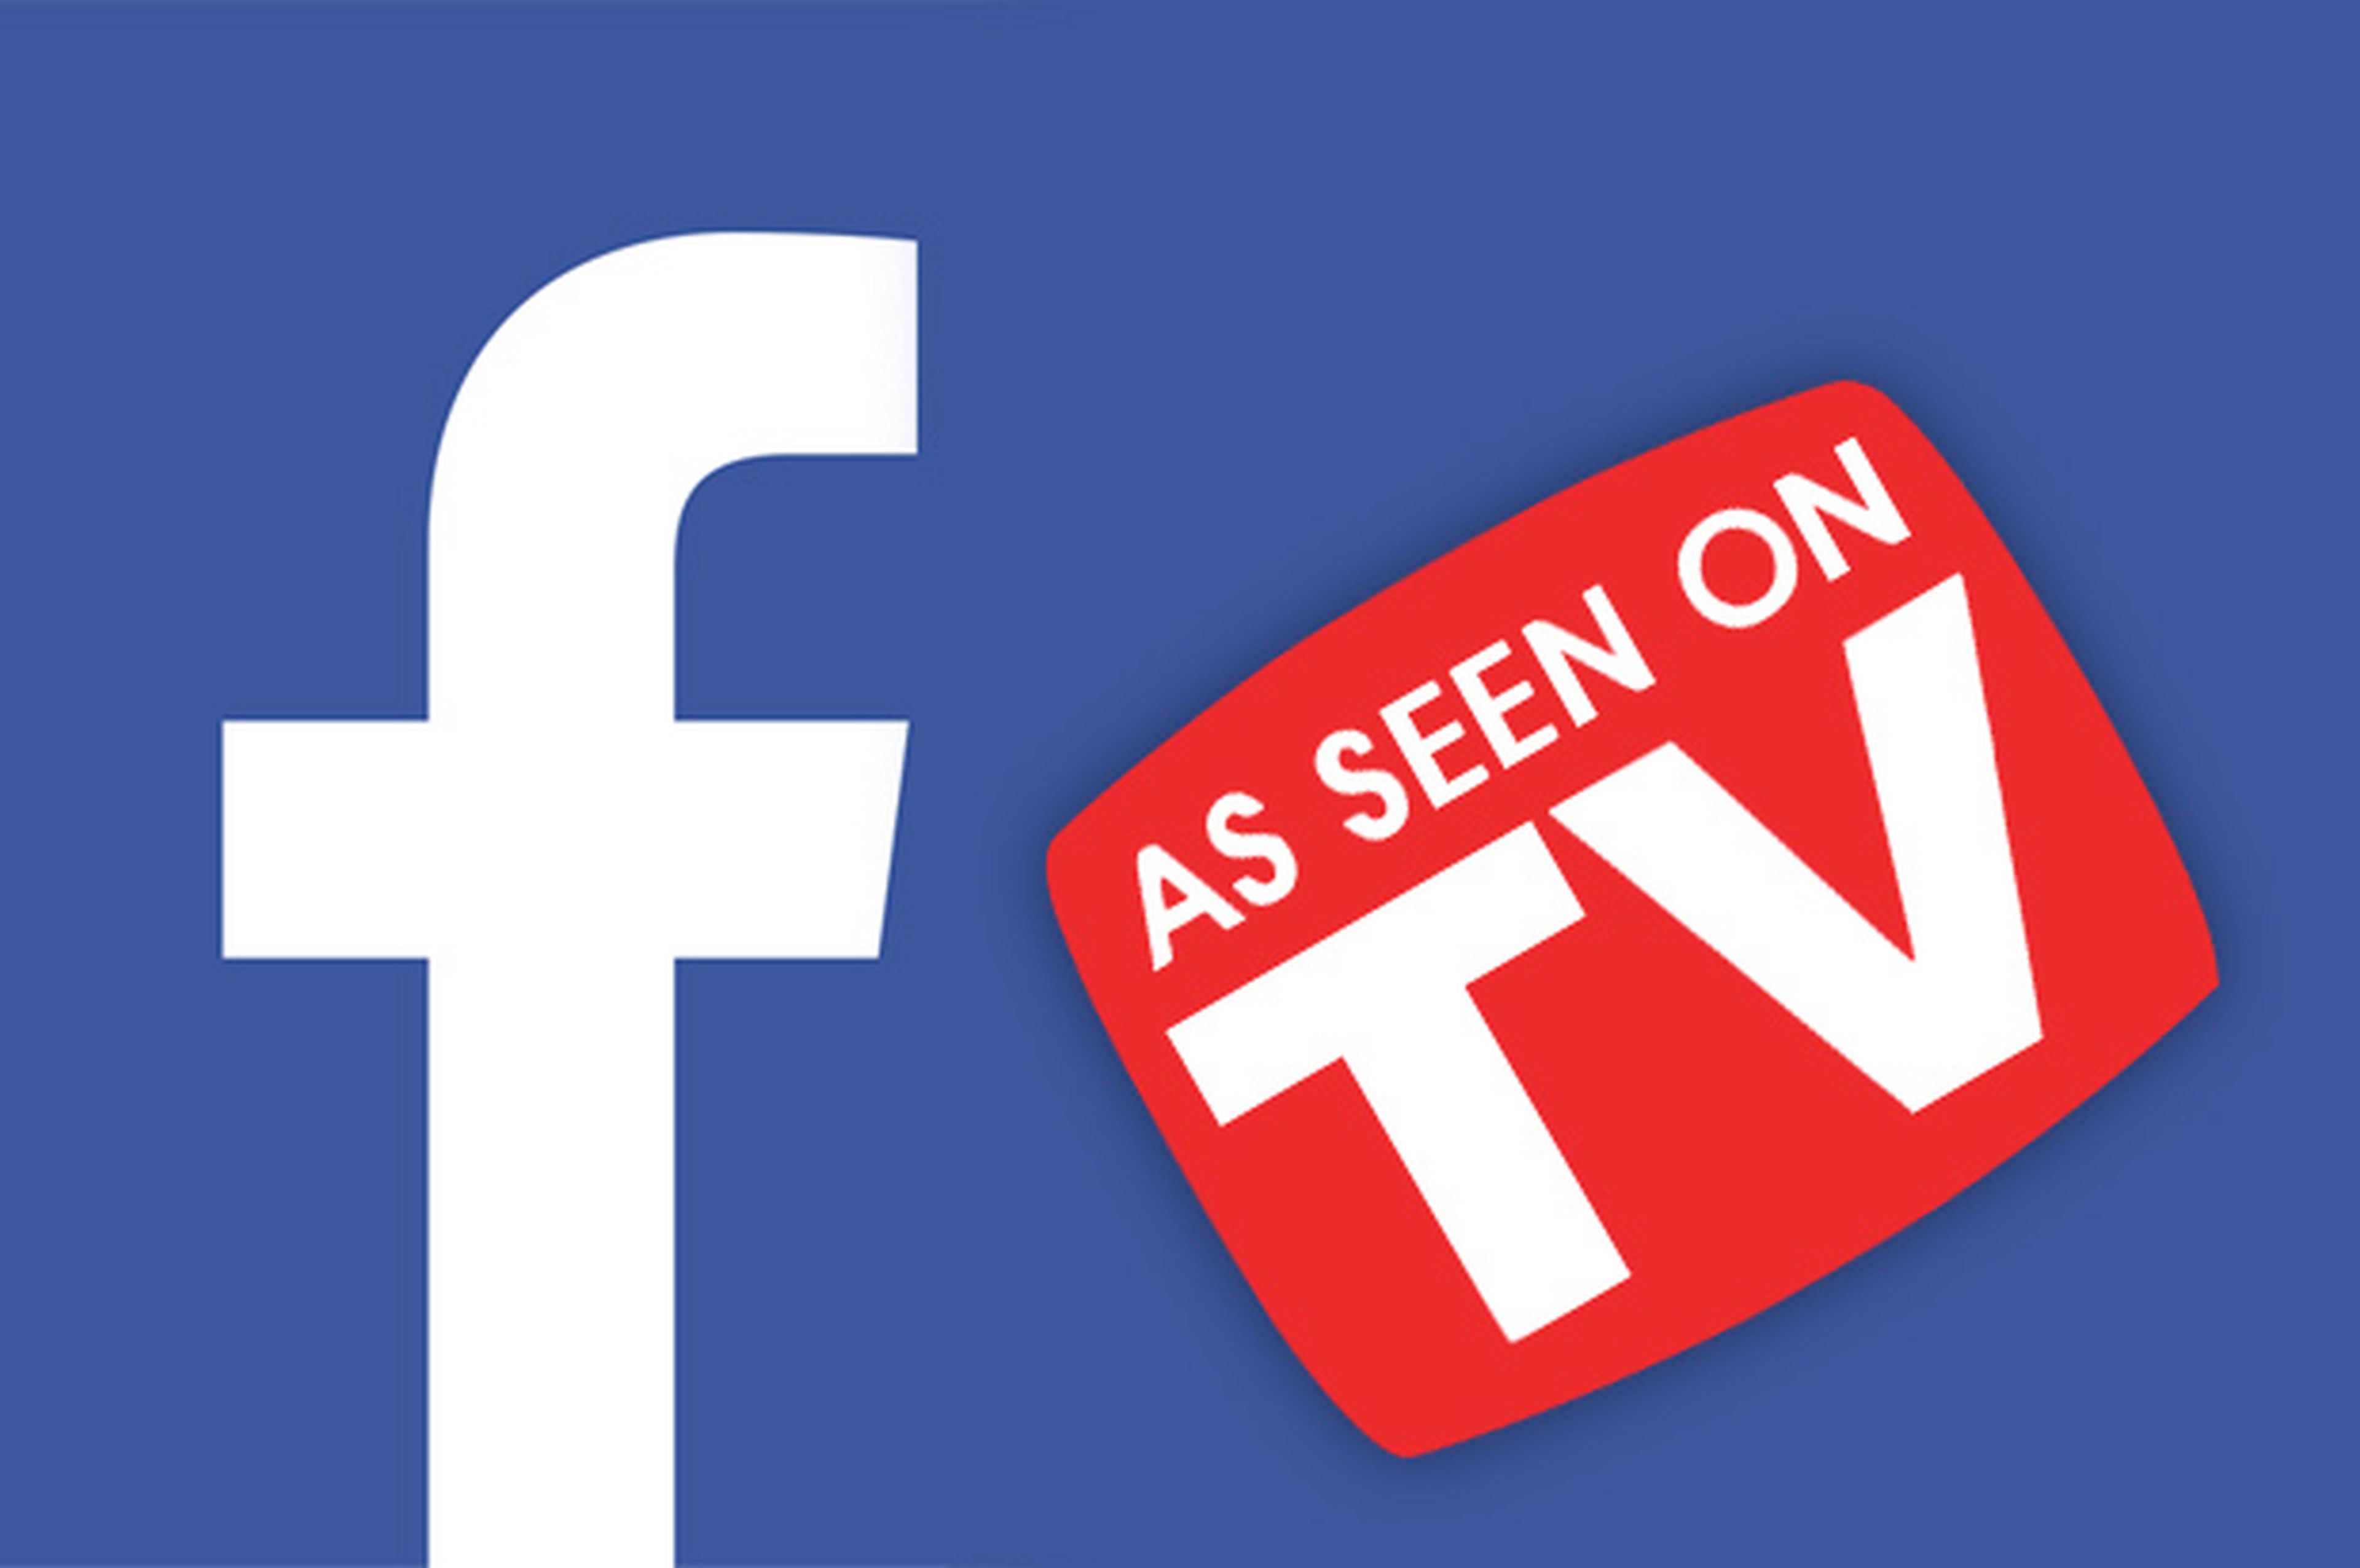 Tu feed de Facebook pronto tendrá anuncios de televisión